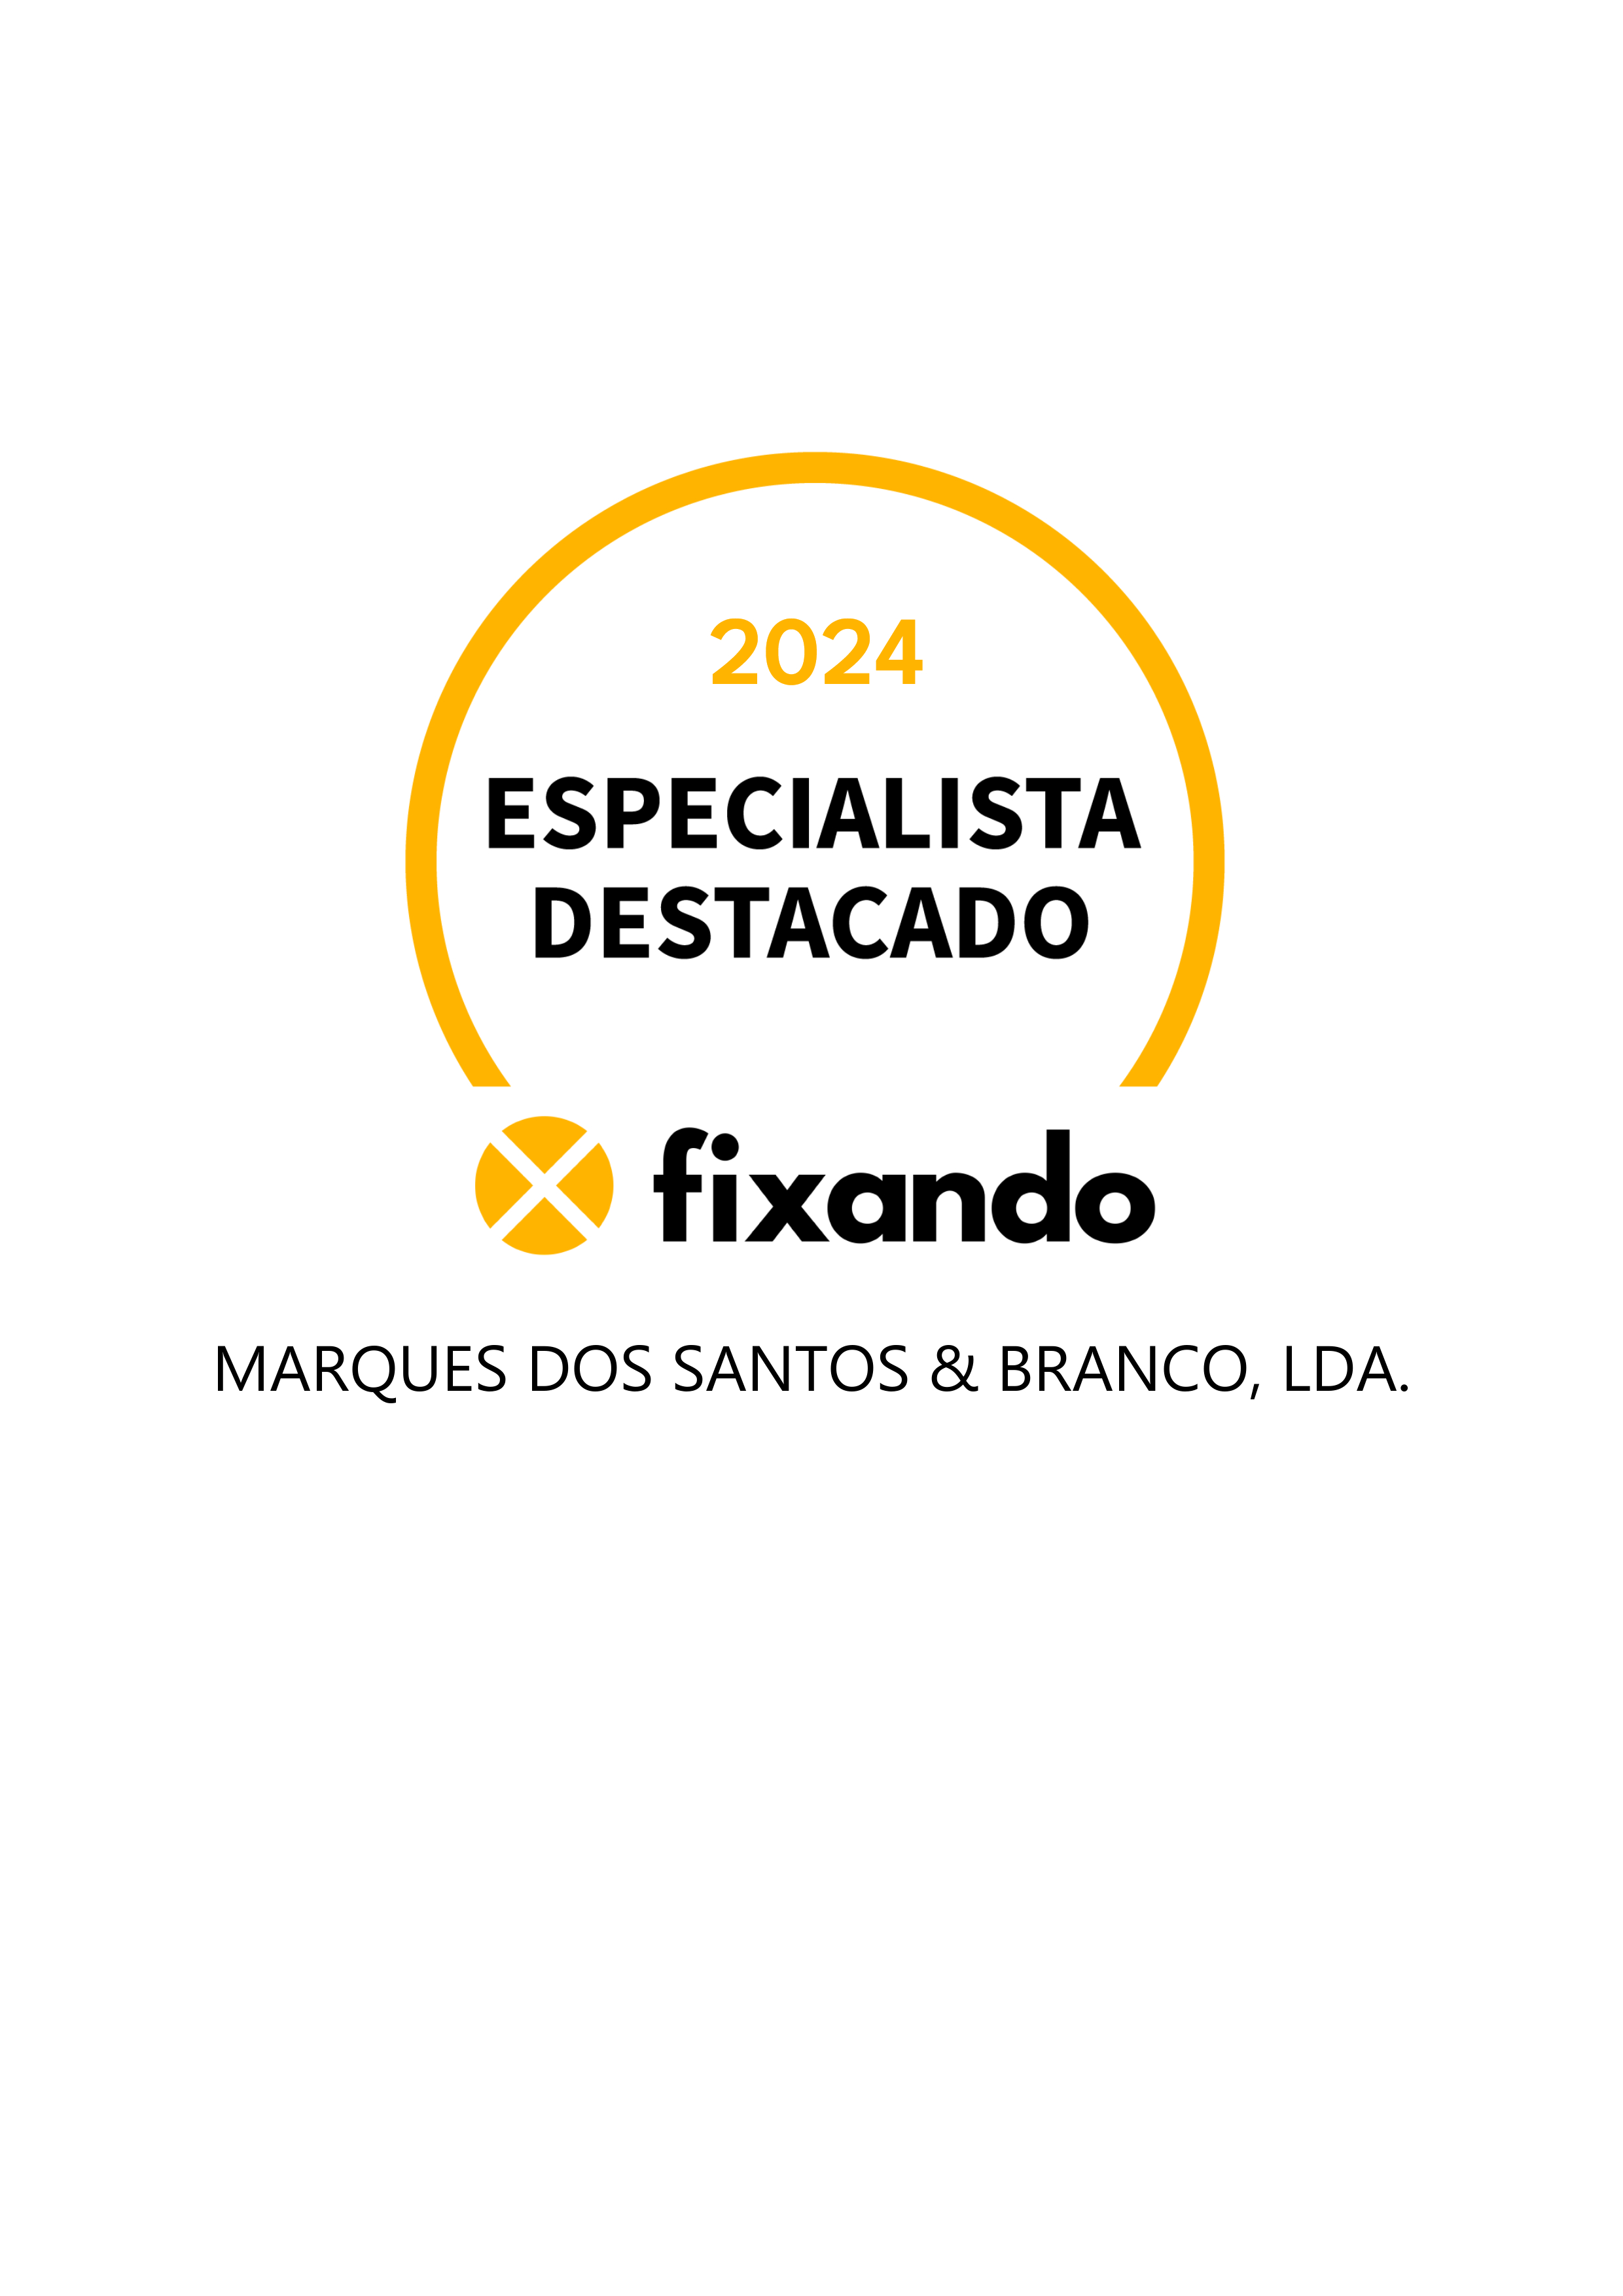 Marques dos Santos & Branco, LDA. - Lisboa - Auditoria Energética